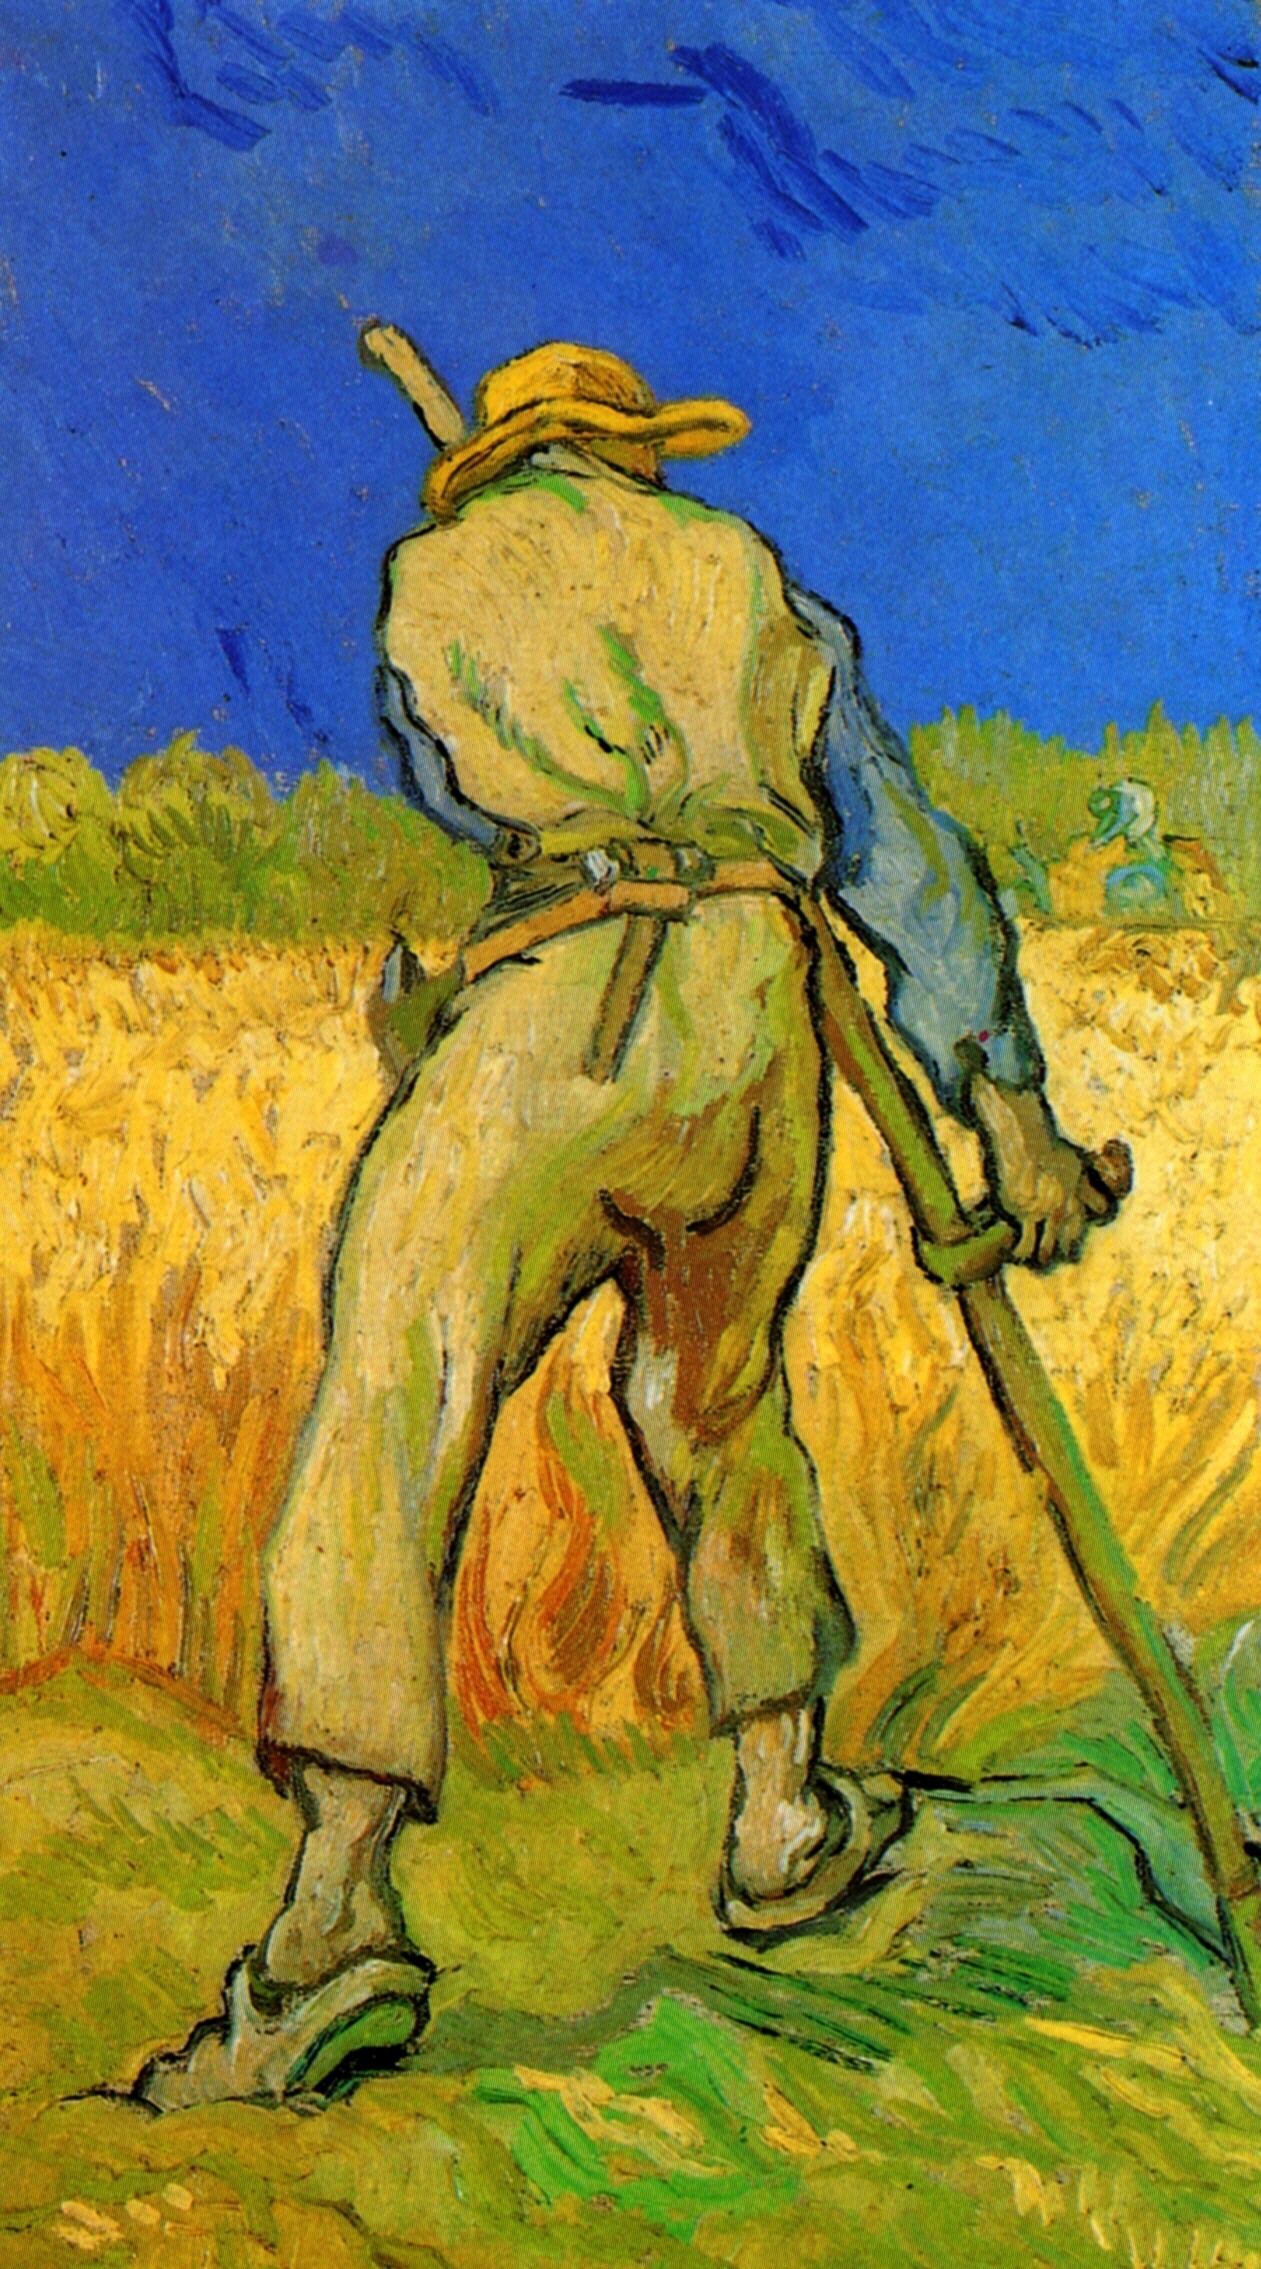 harvest-van-gogh-the-reaper-after-millet-1889